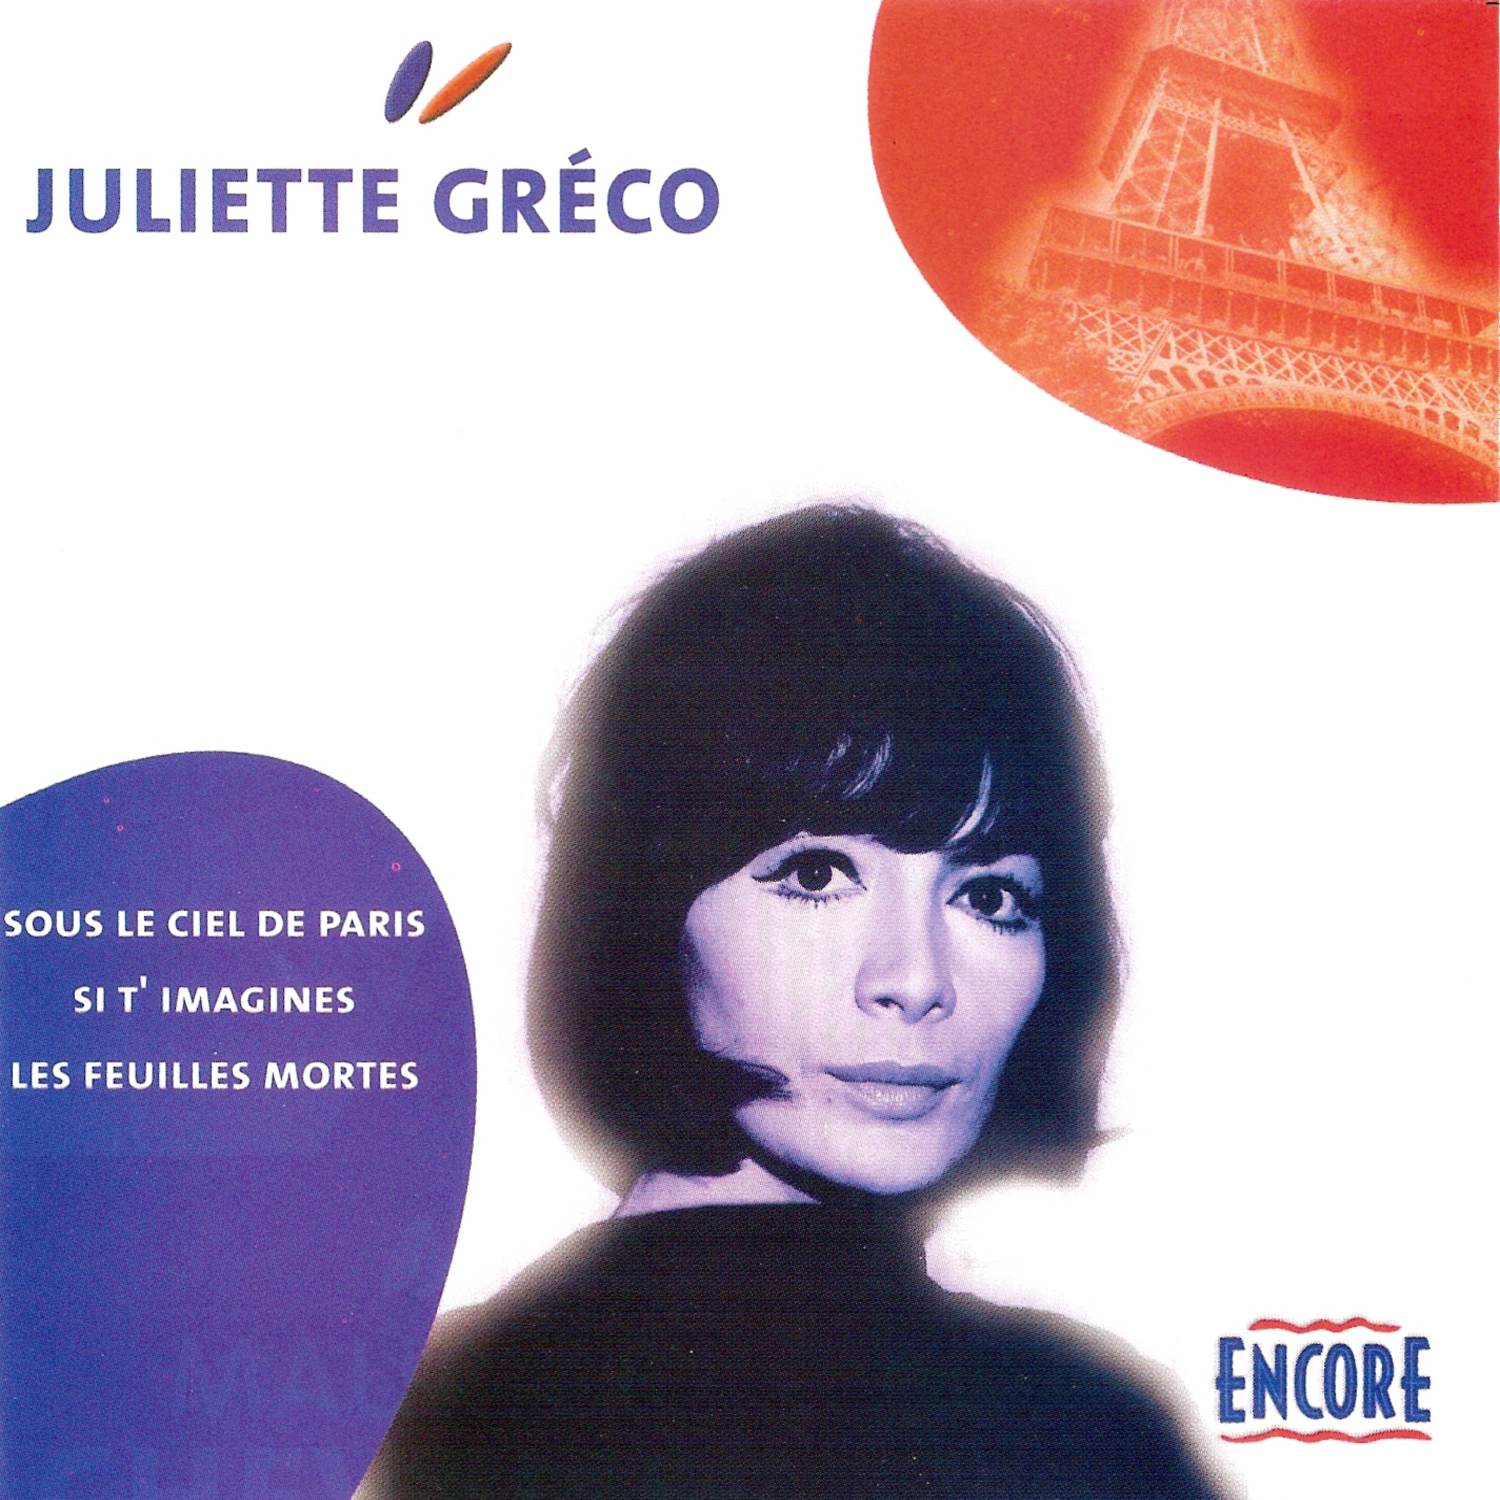 Juliette Gre co